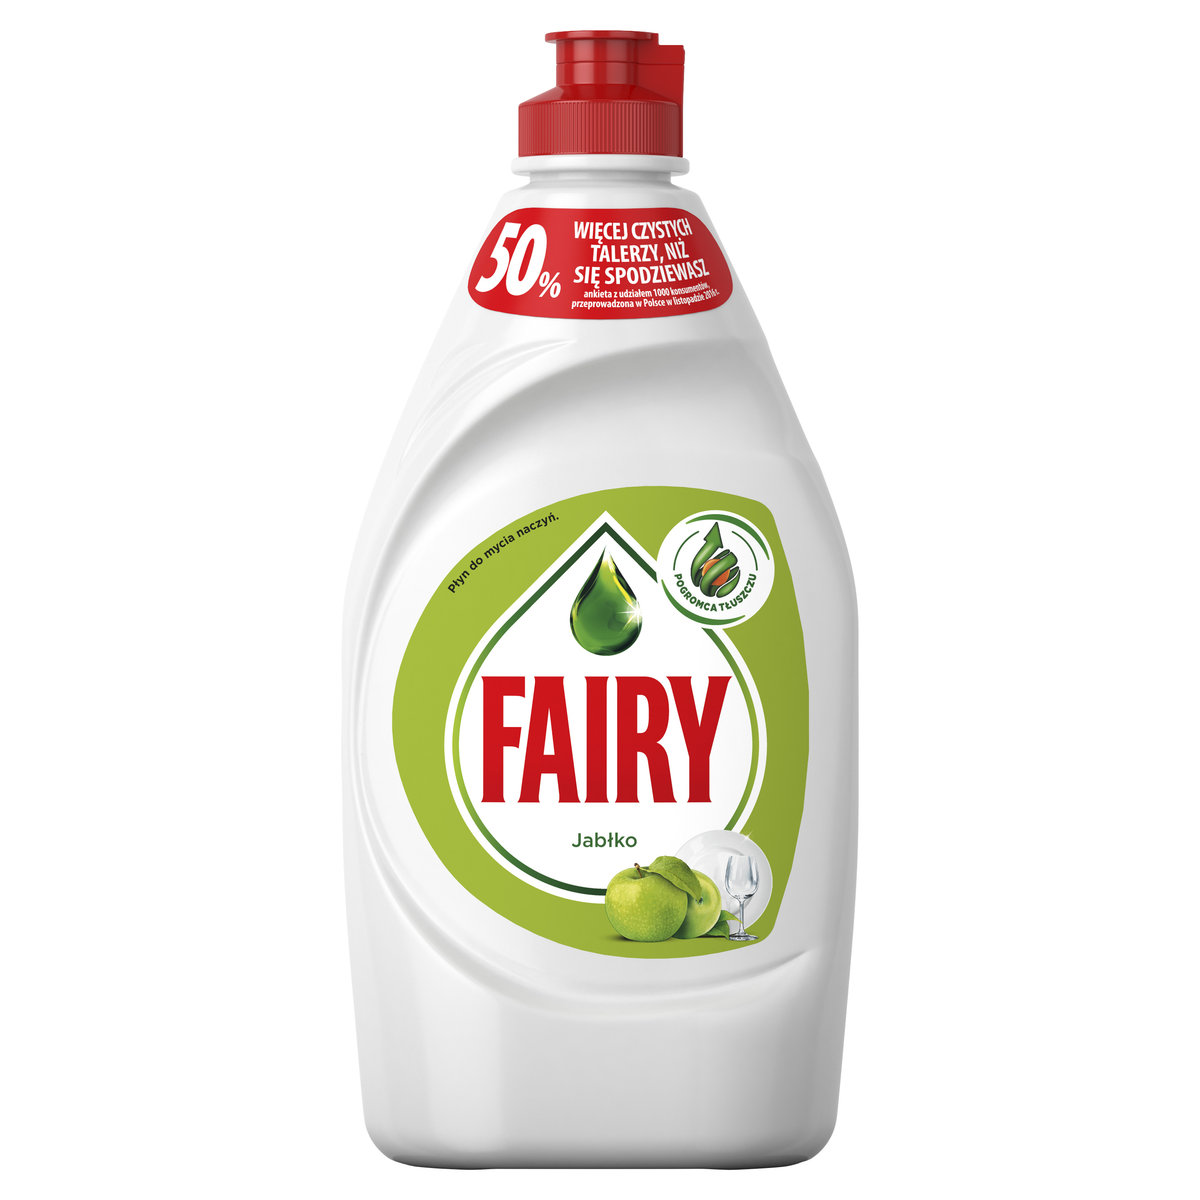 Zdjęcia - Ręczne zmywanie naczyń Fairy , Apple, płyn do mycia naczyń, 450 ml 